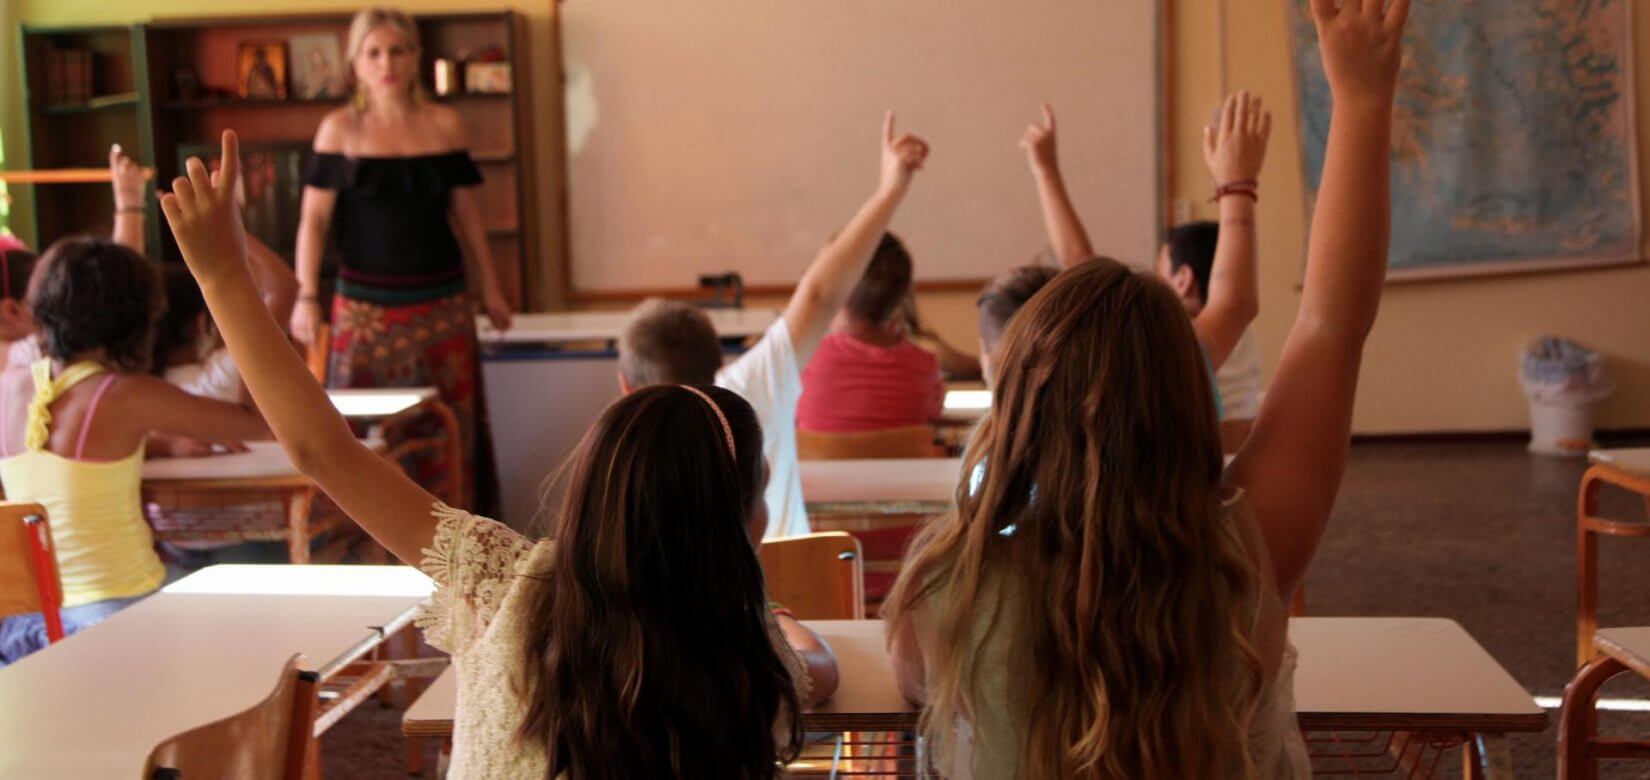 Κορωνοϊός: Ποια μέτρα εξετάζει το Υπ. Παιδείας για το άνοιγμα των σχολείων ένα μήνα πριν την επίσημη έναρξη;